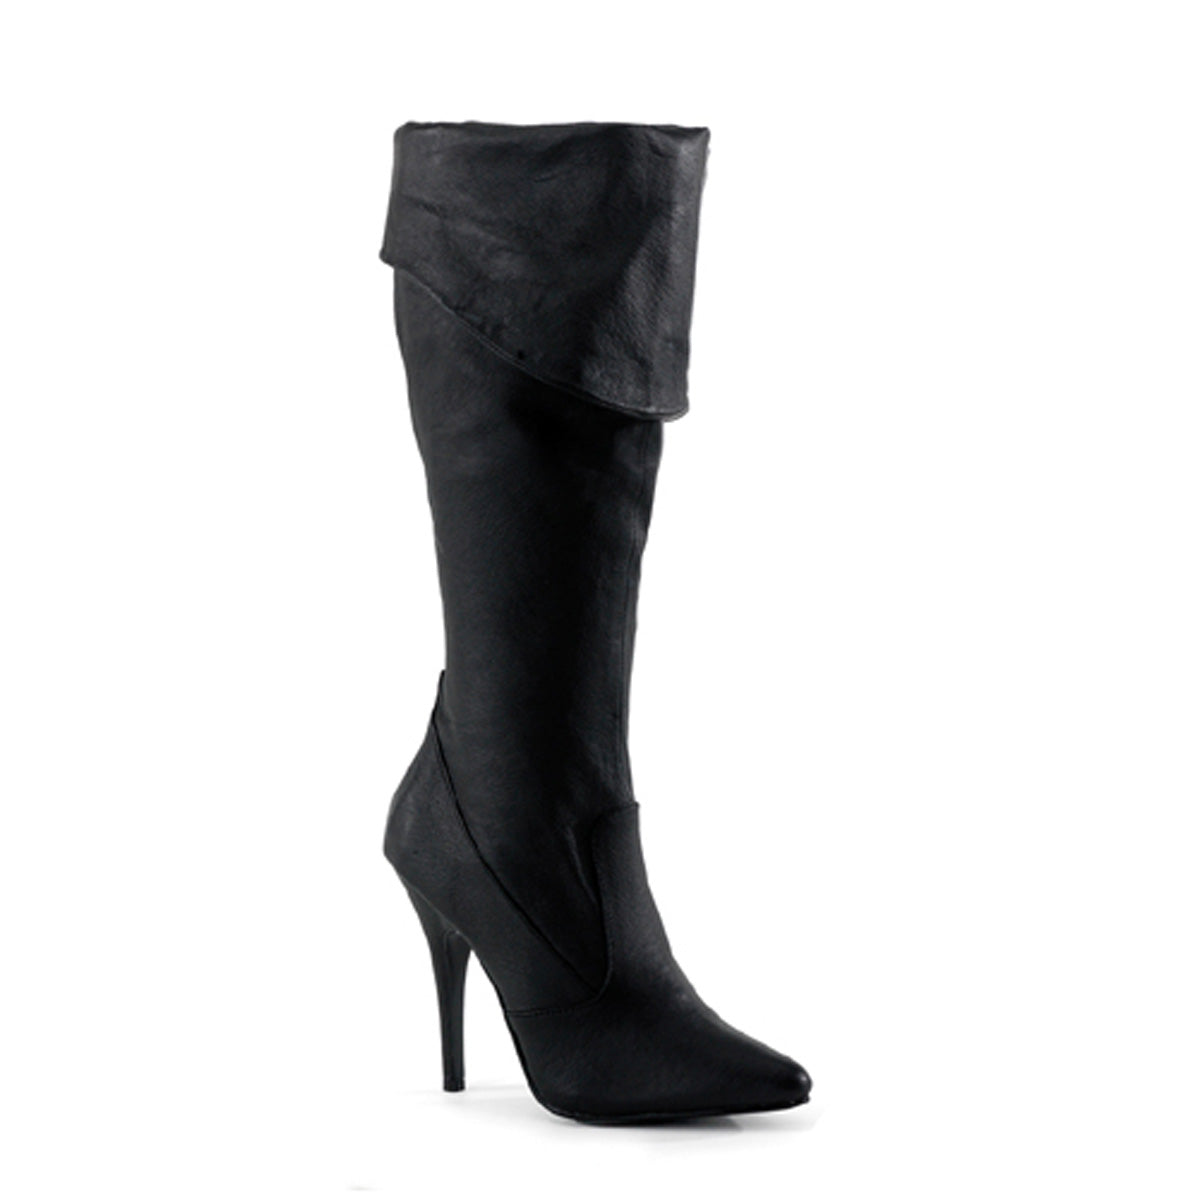 SEDUCE-2013 Pleasers 5" Heel Black Leather Fetish Footwear